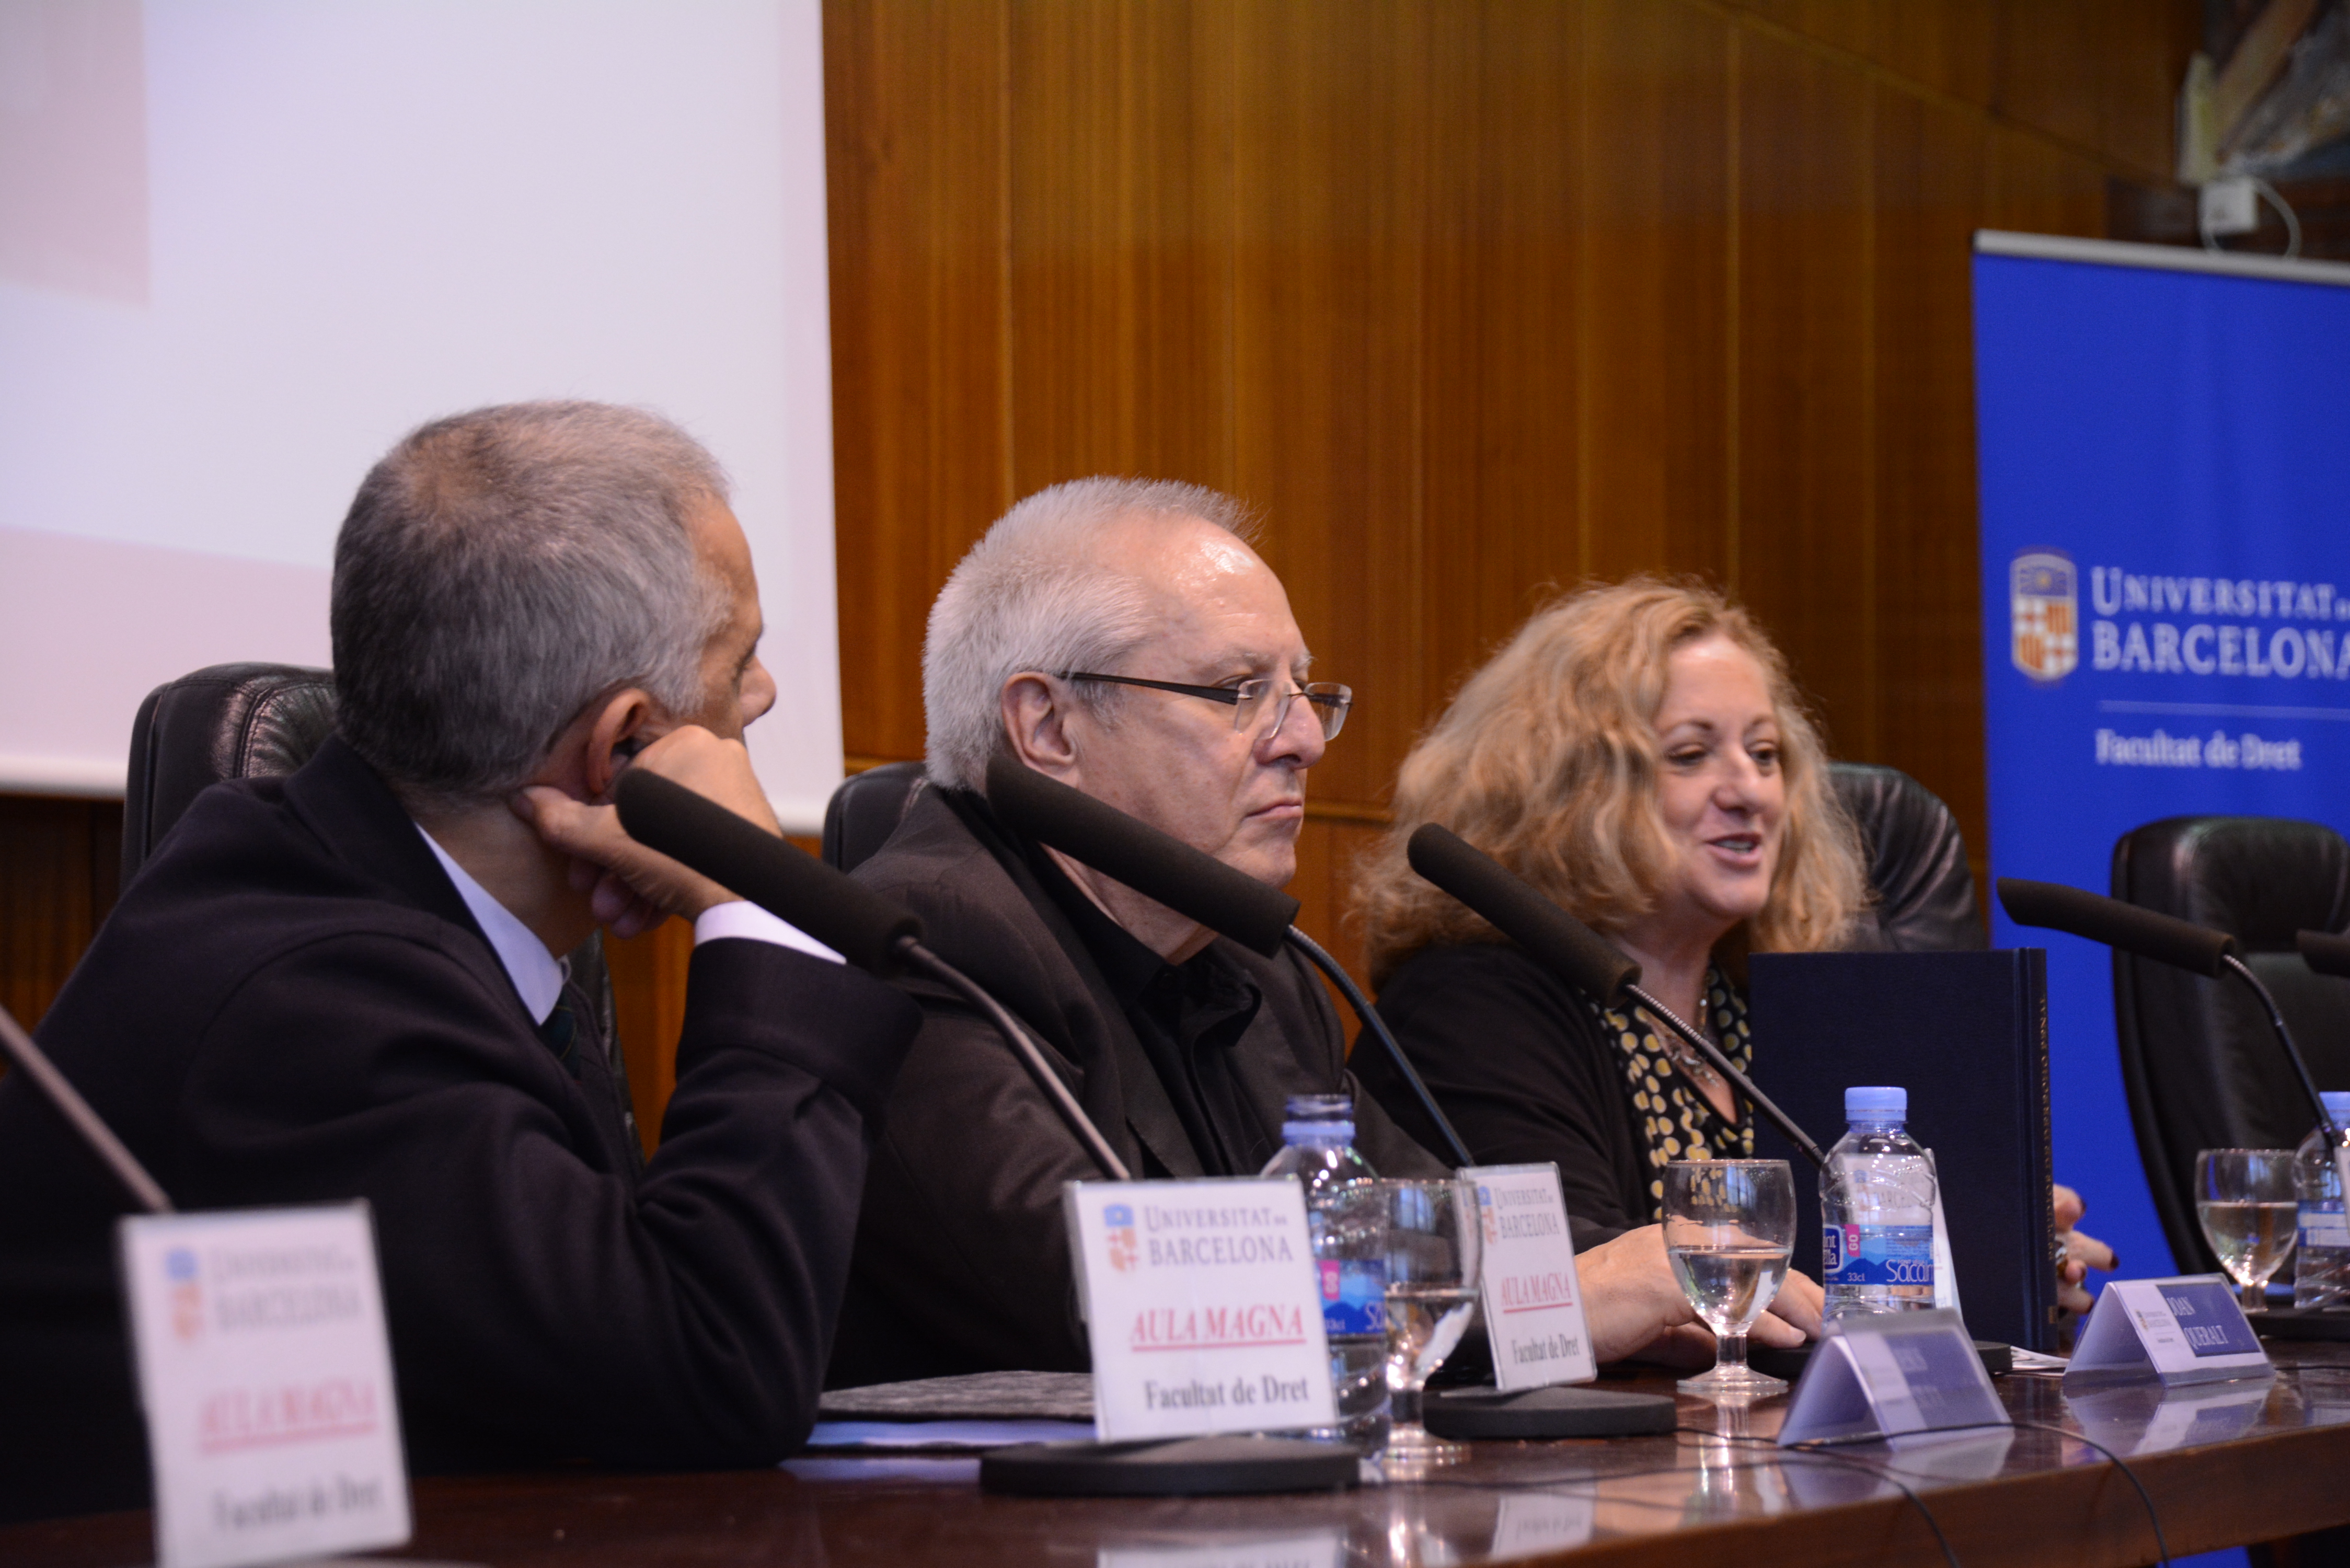 Los directores de las jornadas, los Profs. Dres. Silva Sánchez (izq.), Queralt Jiménez (centro) y Corcoy Bidasolo* (dcha.) presentan el Libro Homenaje al Prof. Dr. Dr. h.c. mult. Mir Puig.